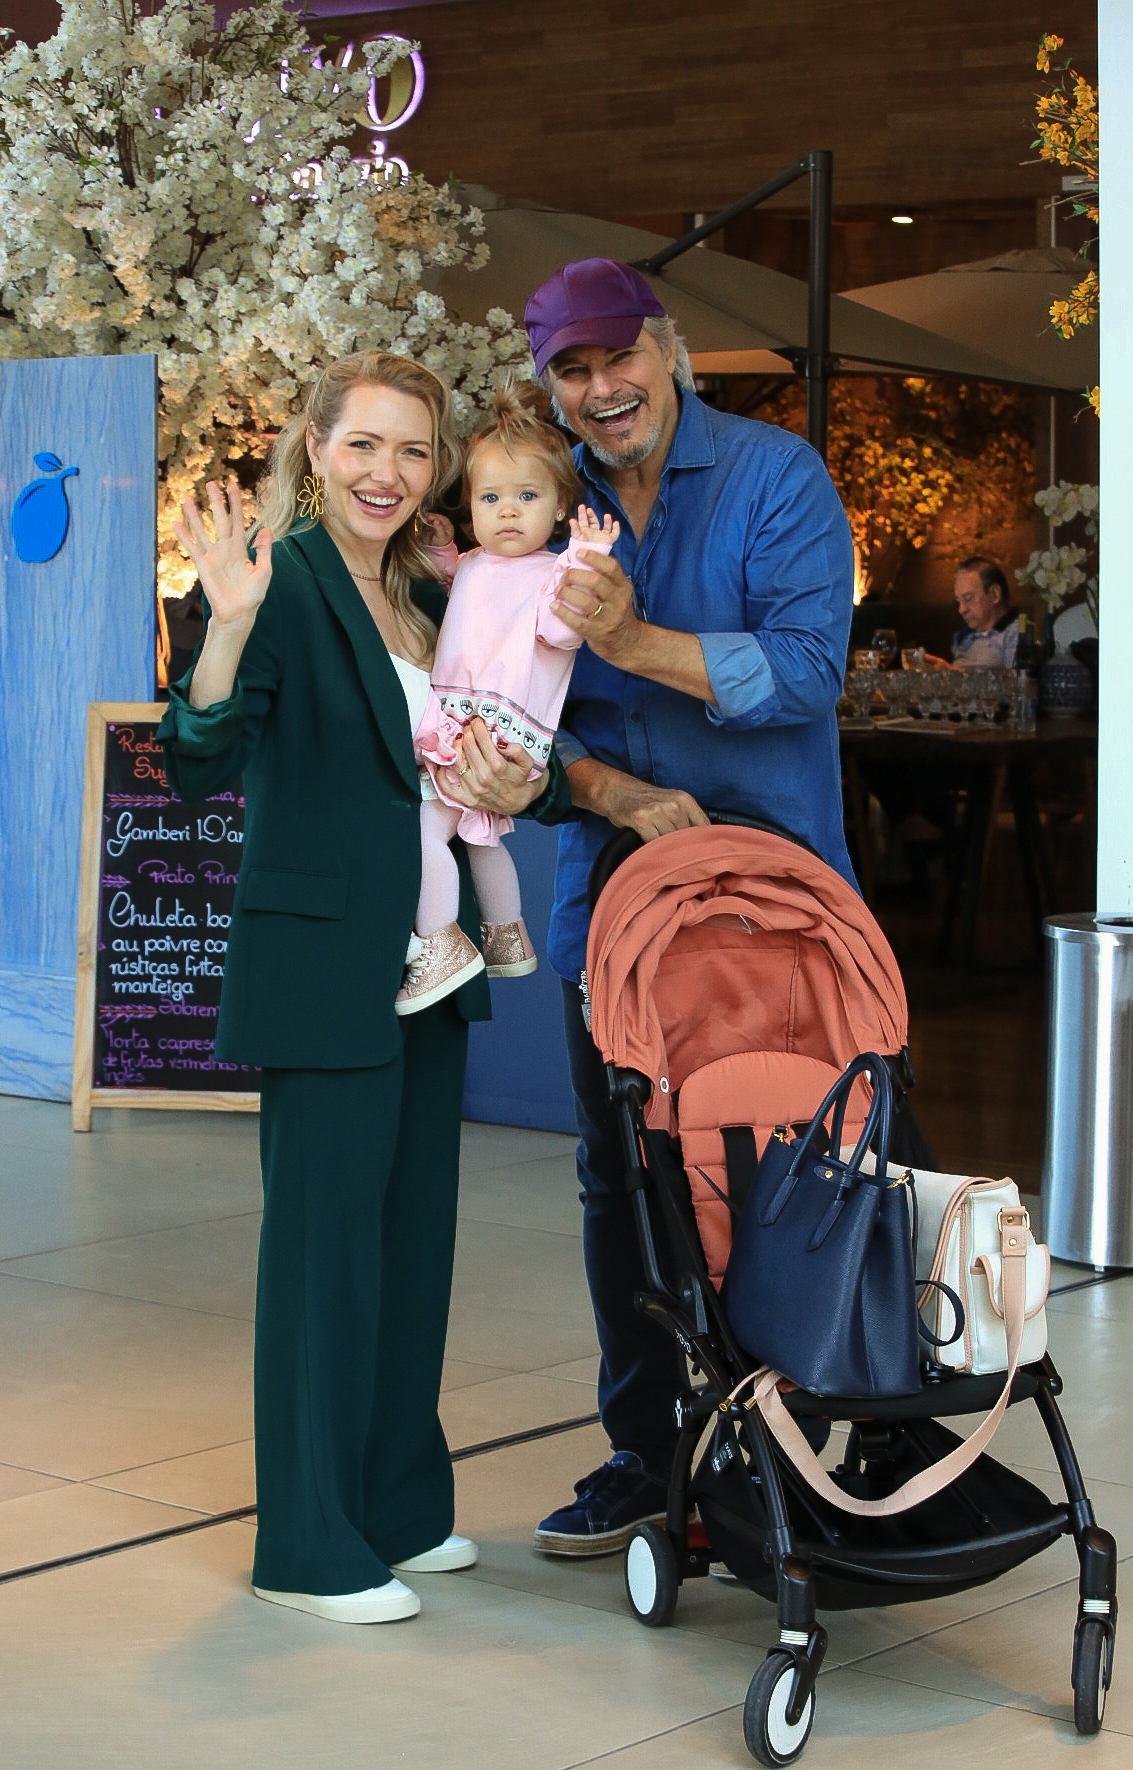 Karin Roepke e Edson Celulari passeiam com a filha Chiara em shopping